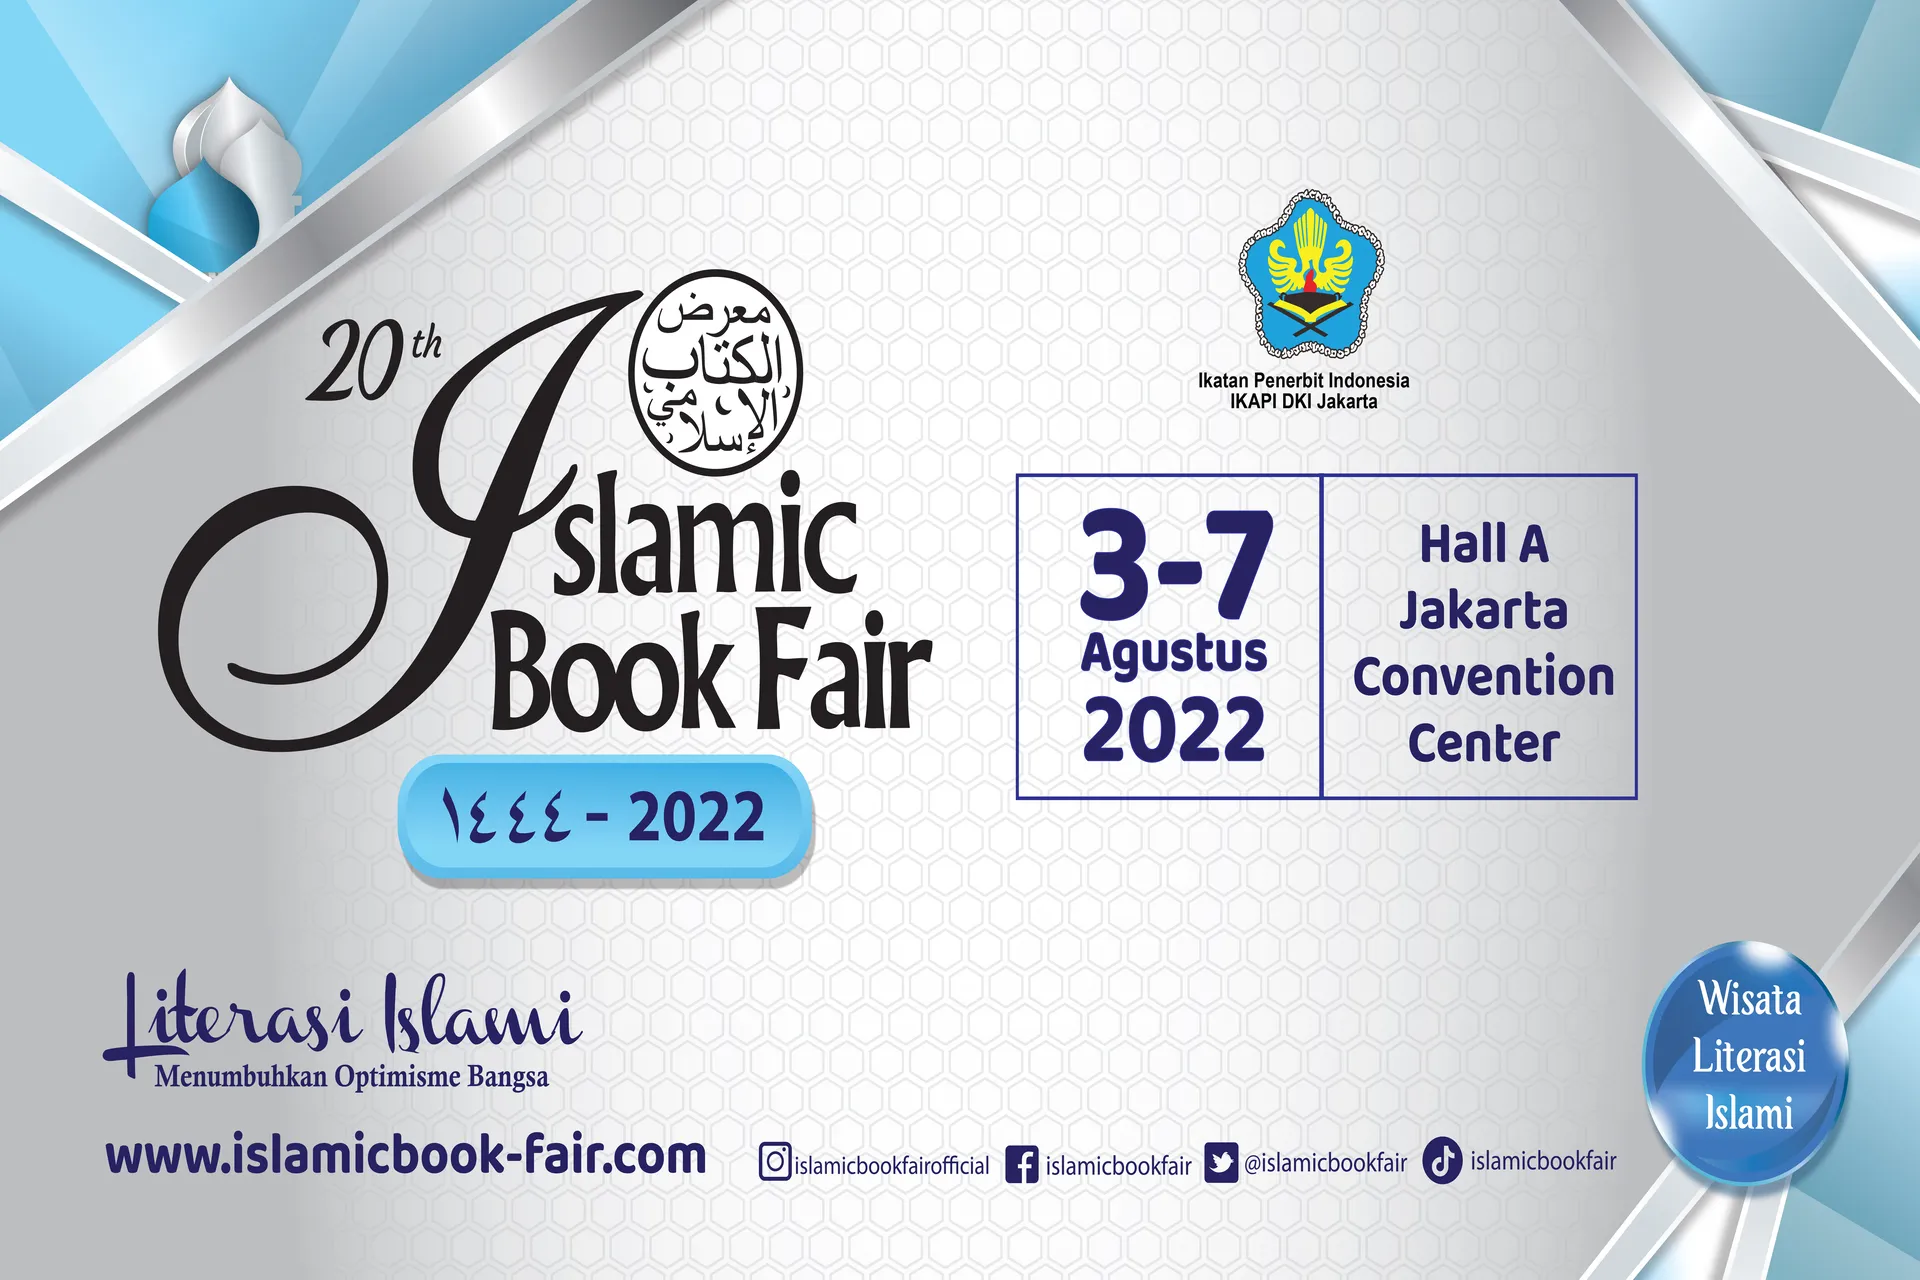 20th Islamic Book Fair 2022